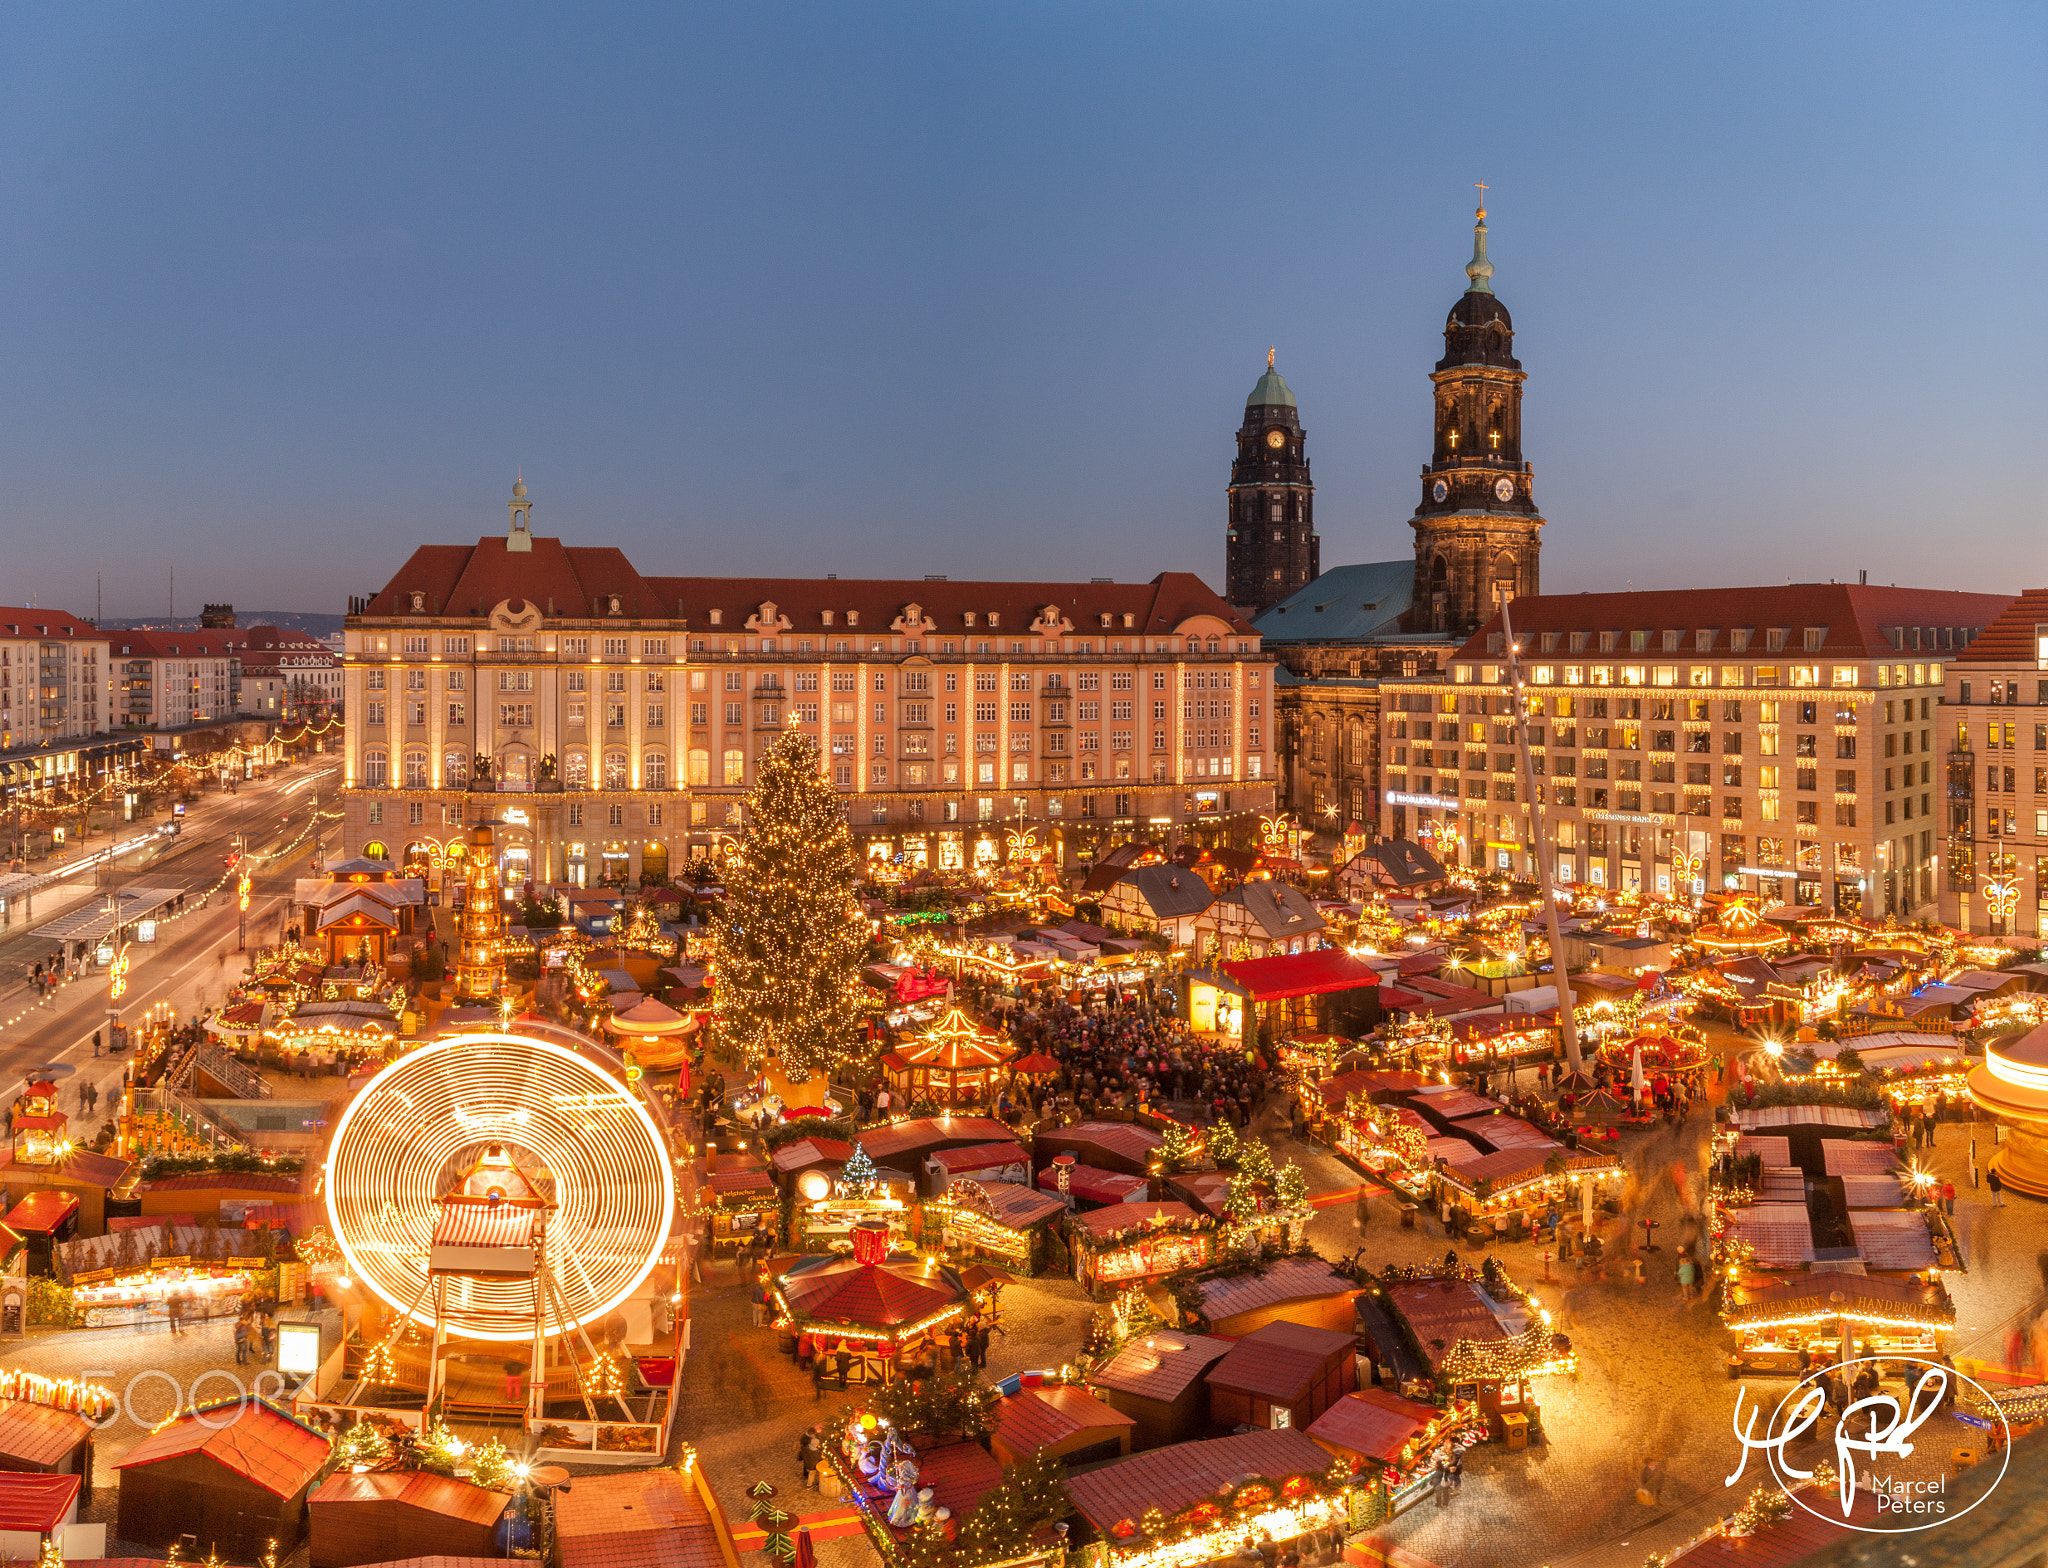 Striezelmarkt Dresden